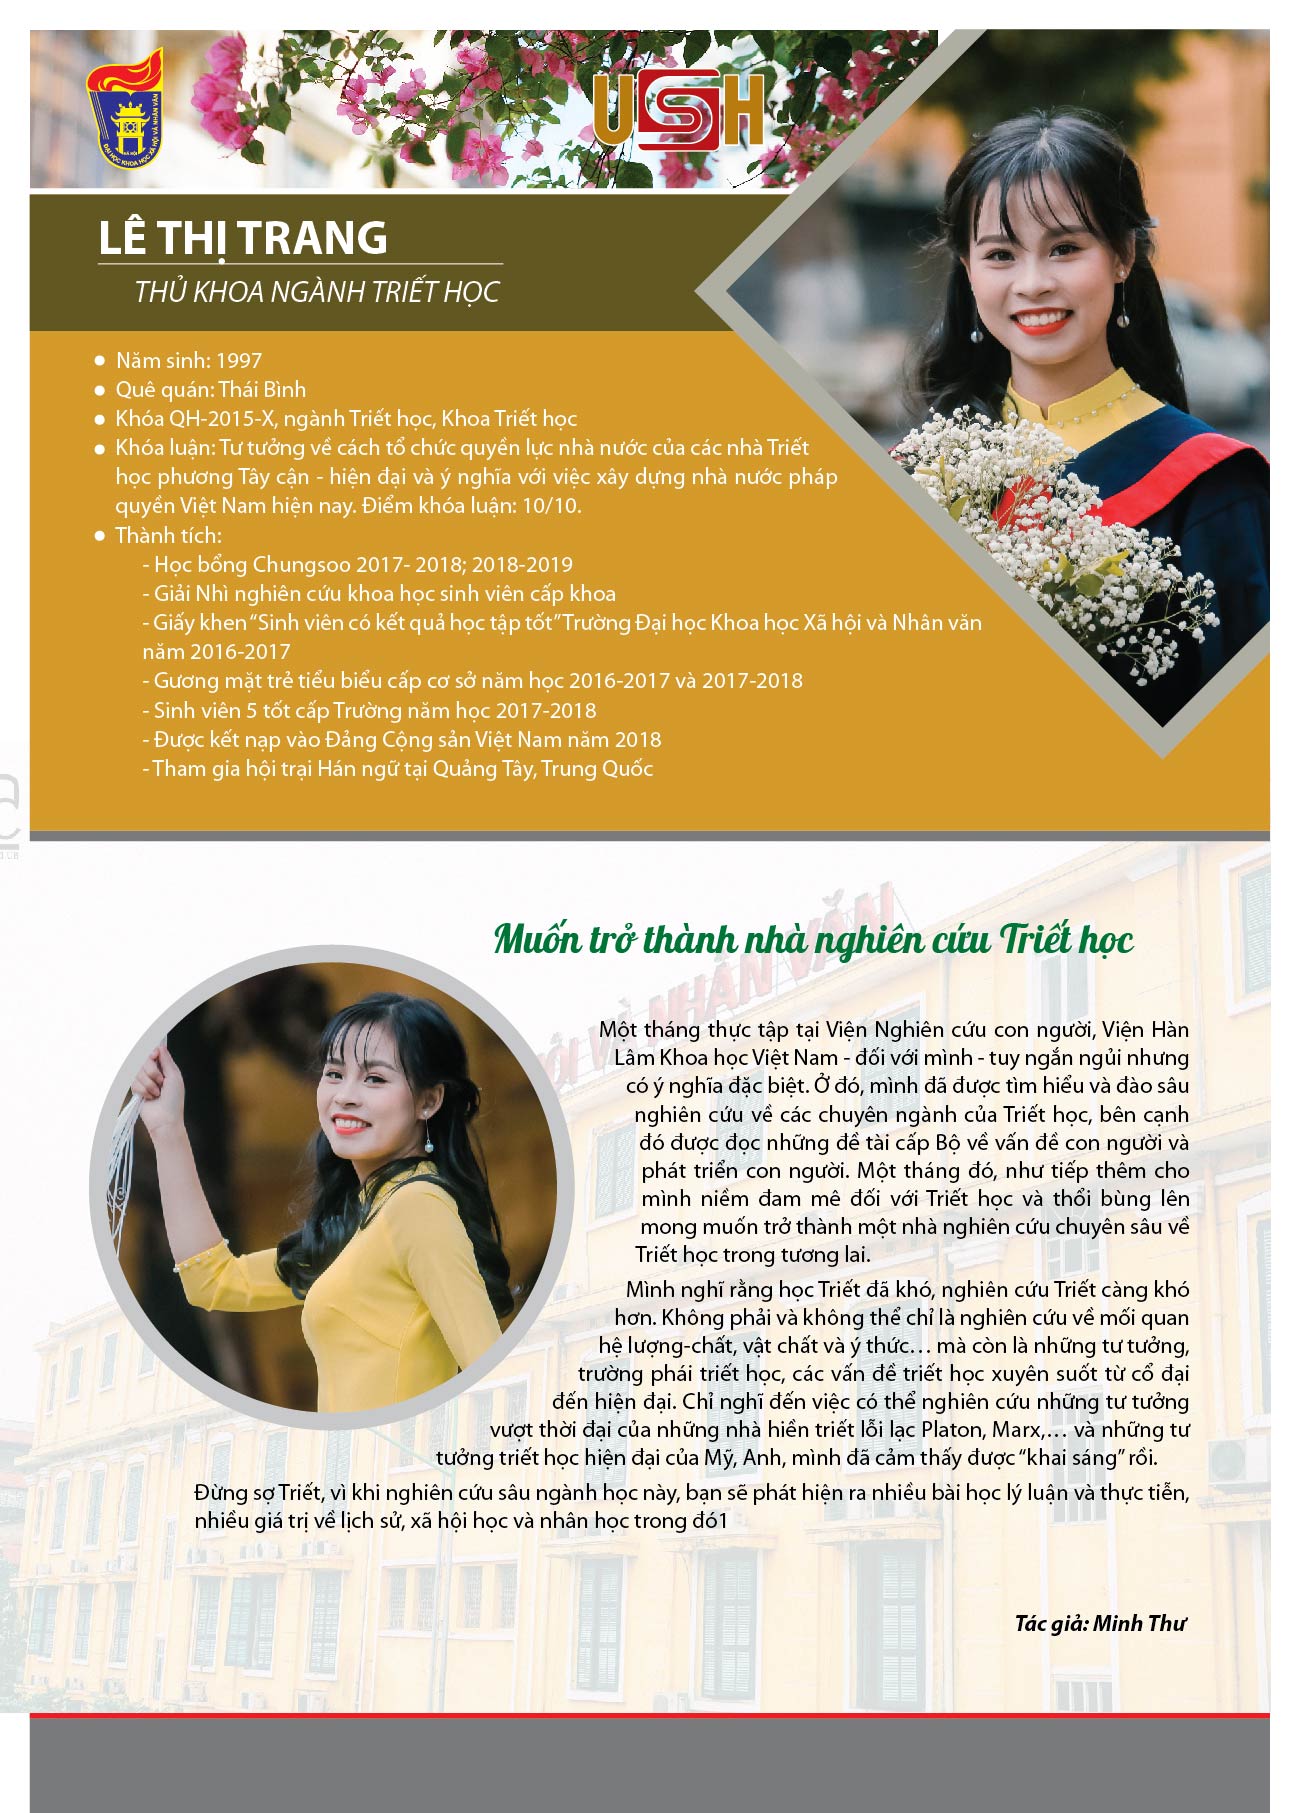 Lê Thị Trang - Thủ khoa ngành Triết học năm 2019